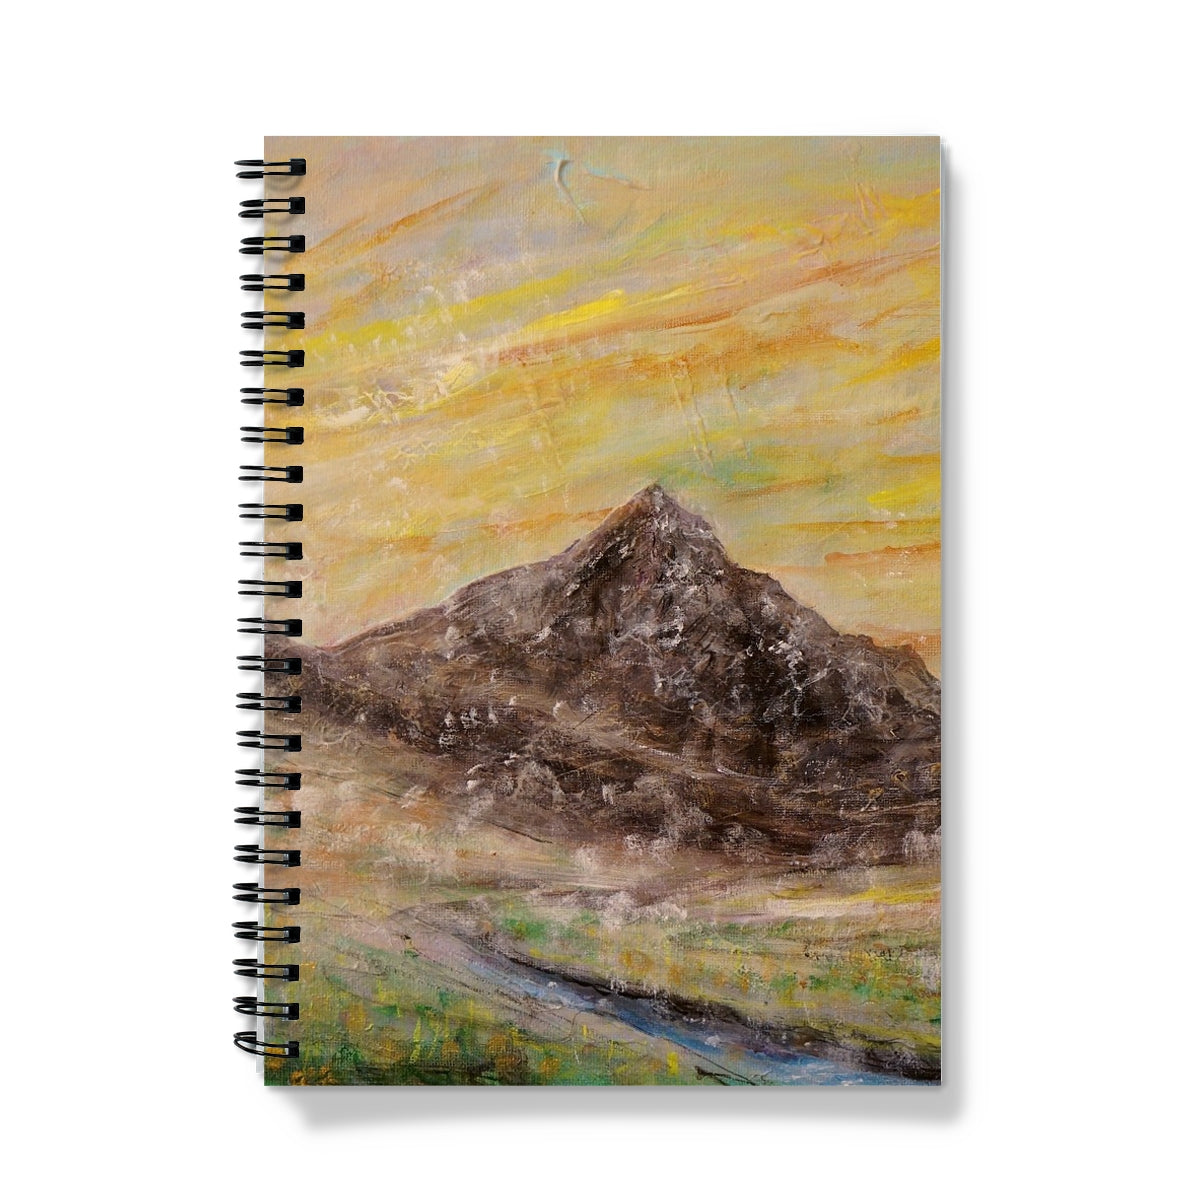 Glen Rosa Mist Arran Art Gifts Notebook-Journals & Notebooks-Arran Art Gallery-A5-Graph-Paintings, Prints, Homeware, Art Gifts From Scotland By Scottish Artist Kevin Hunter